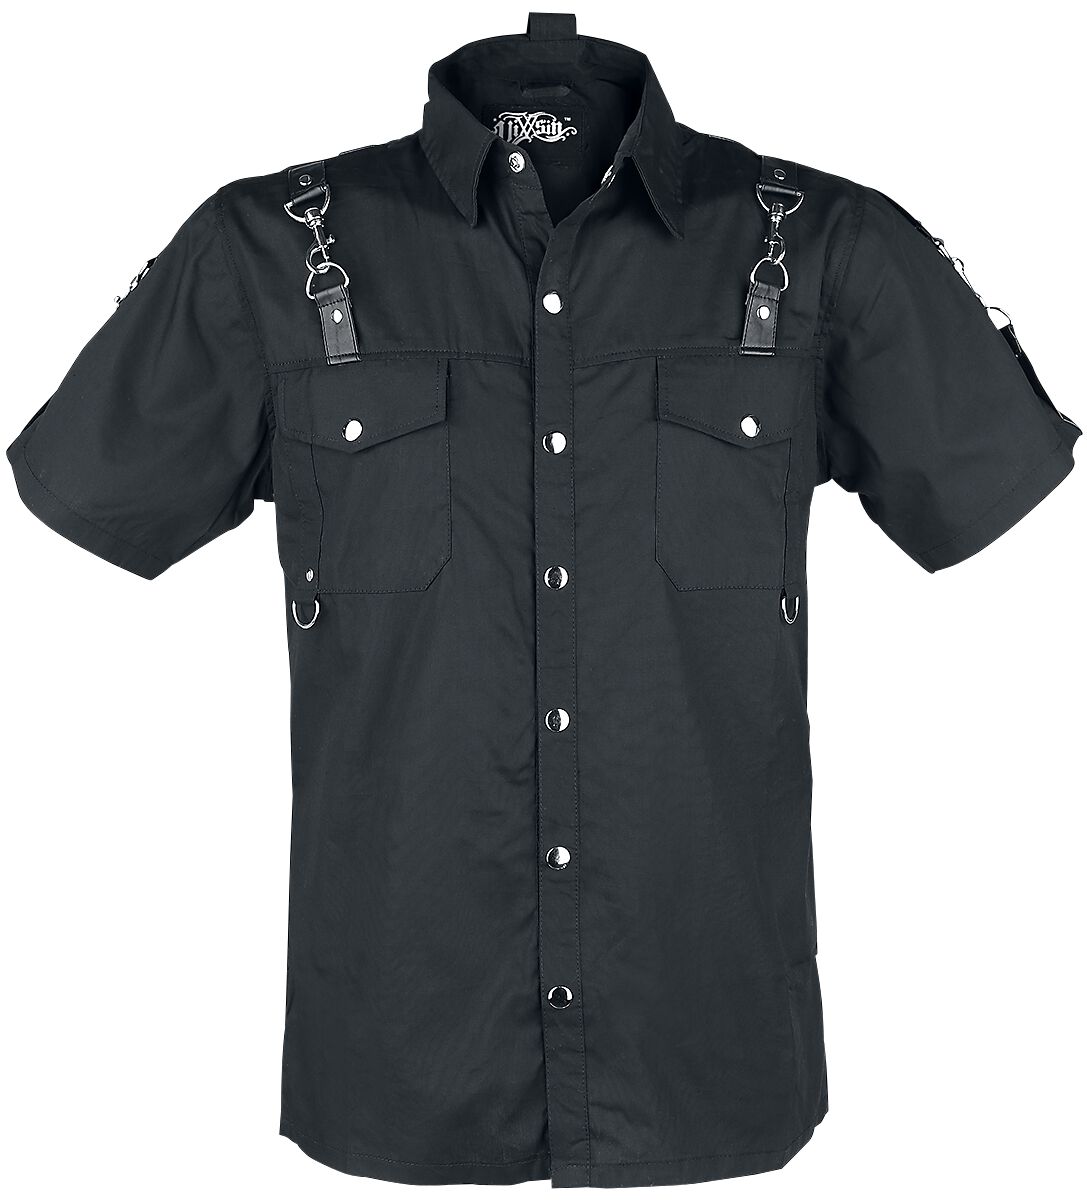 Vixxsin - Gothic Kurzarmhemd - RE Shirt - S bis XXL - für Männer - Größe S - schwarz